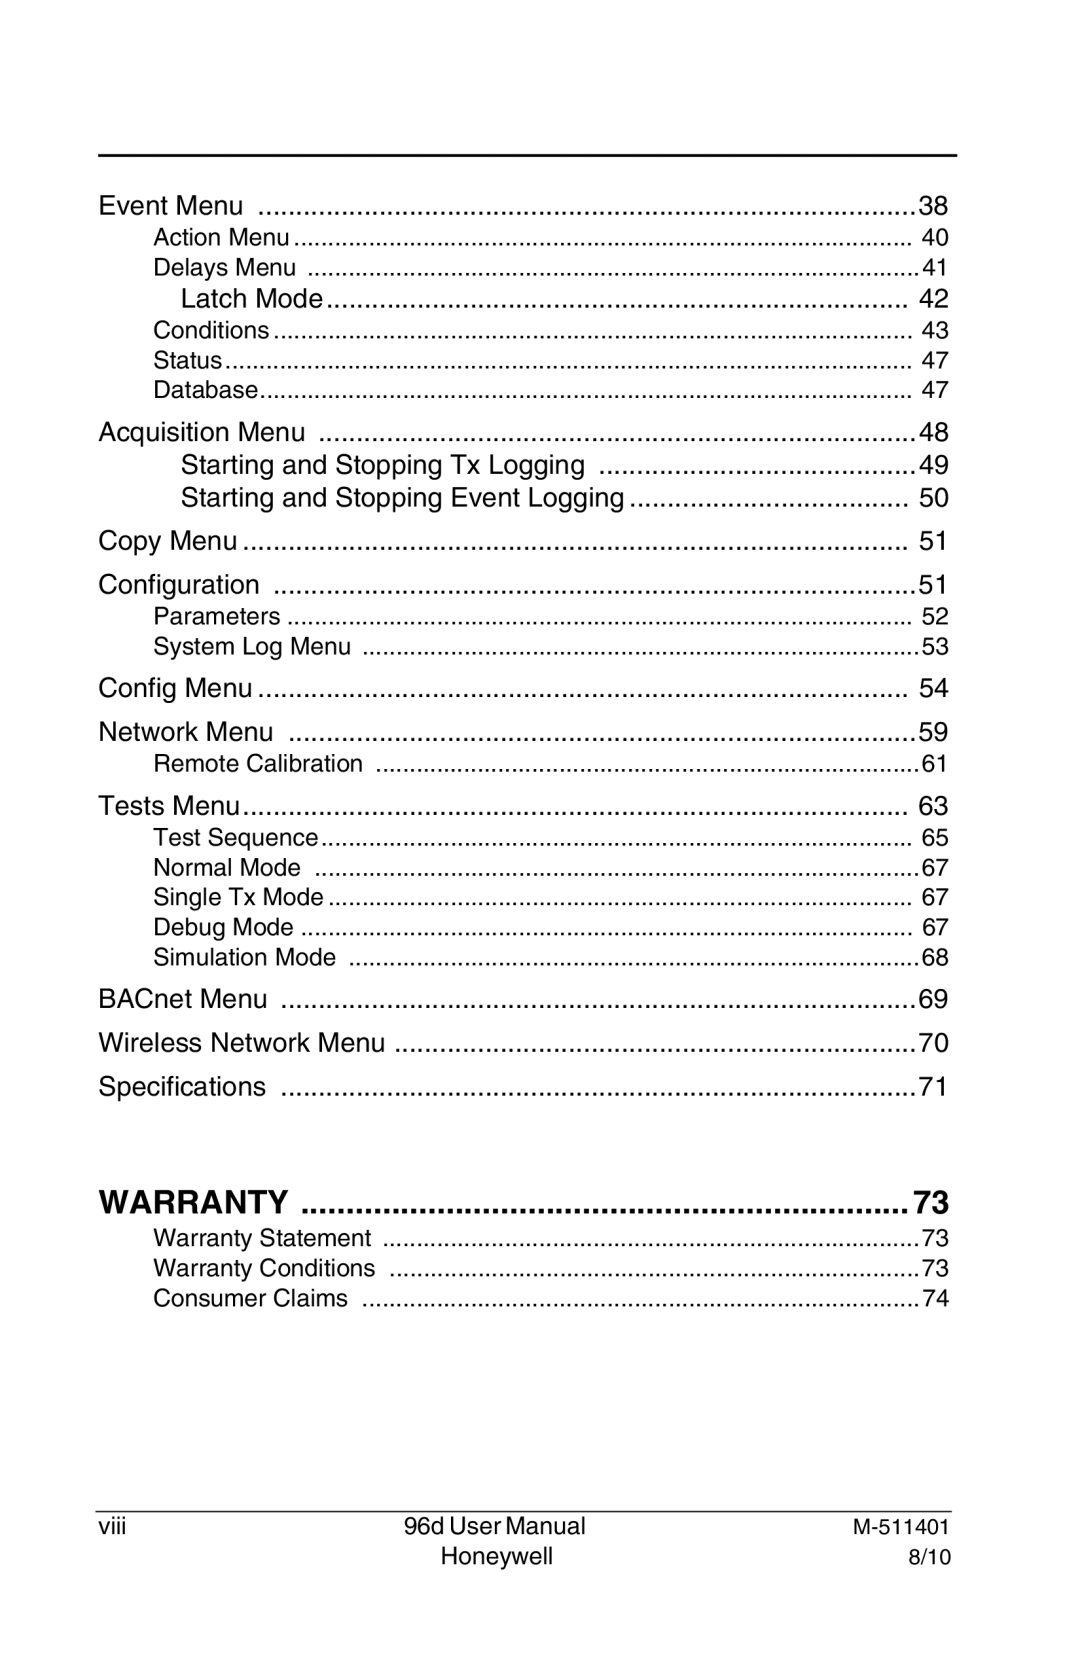 Honeywell 96D user manual Warranty 